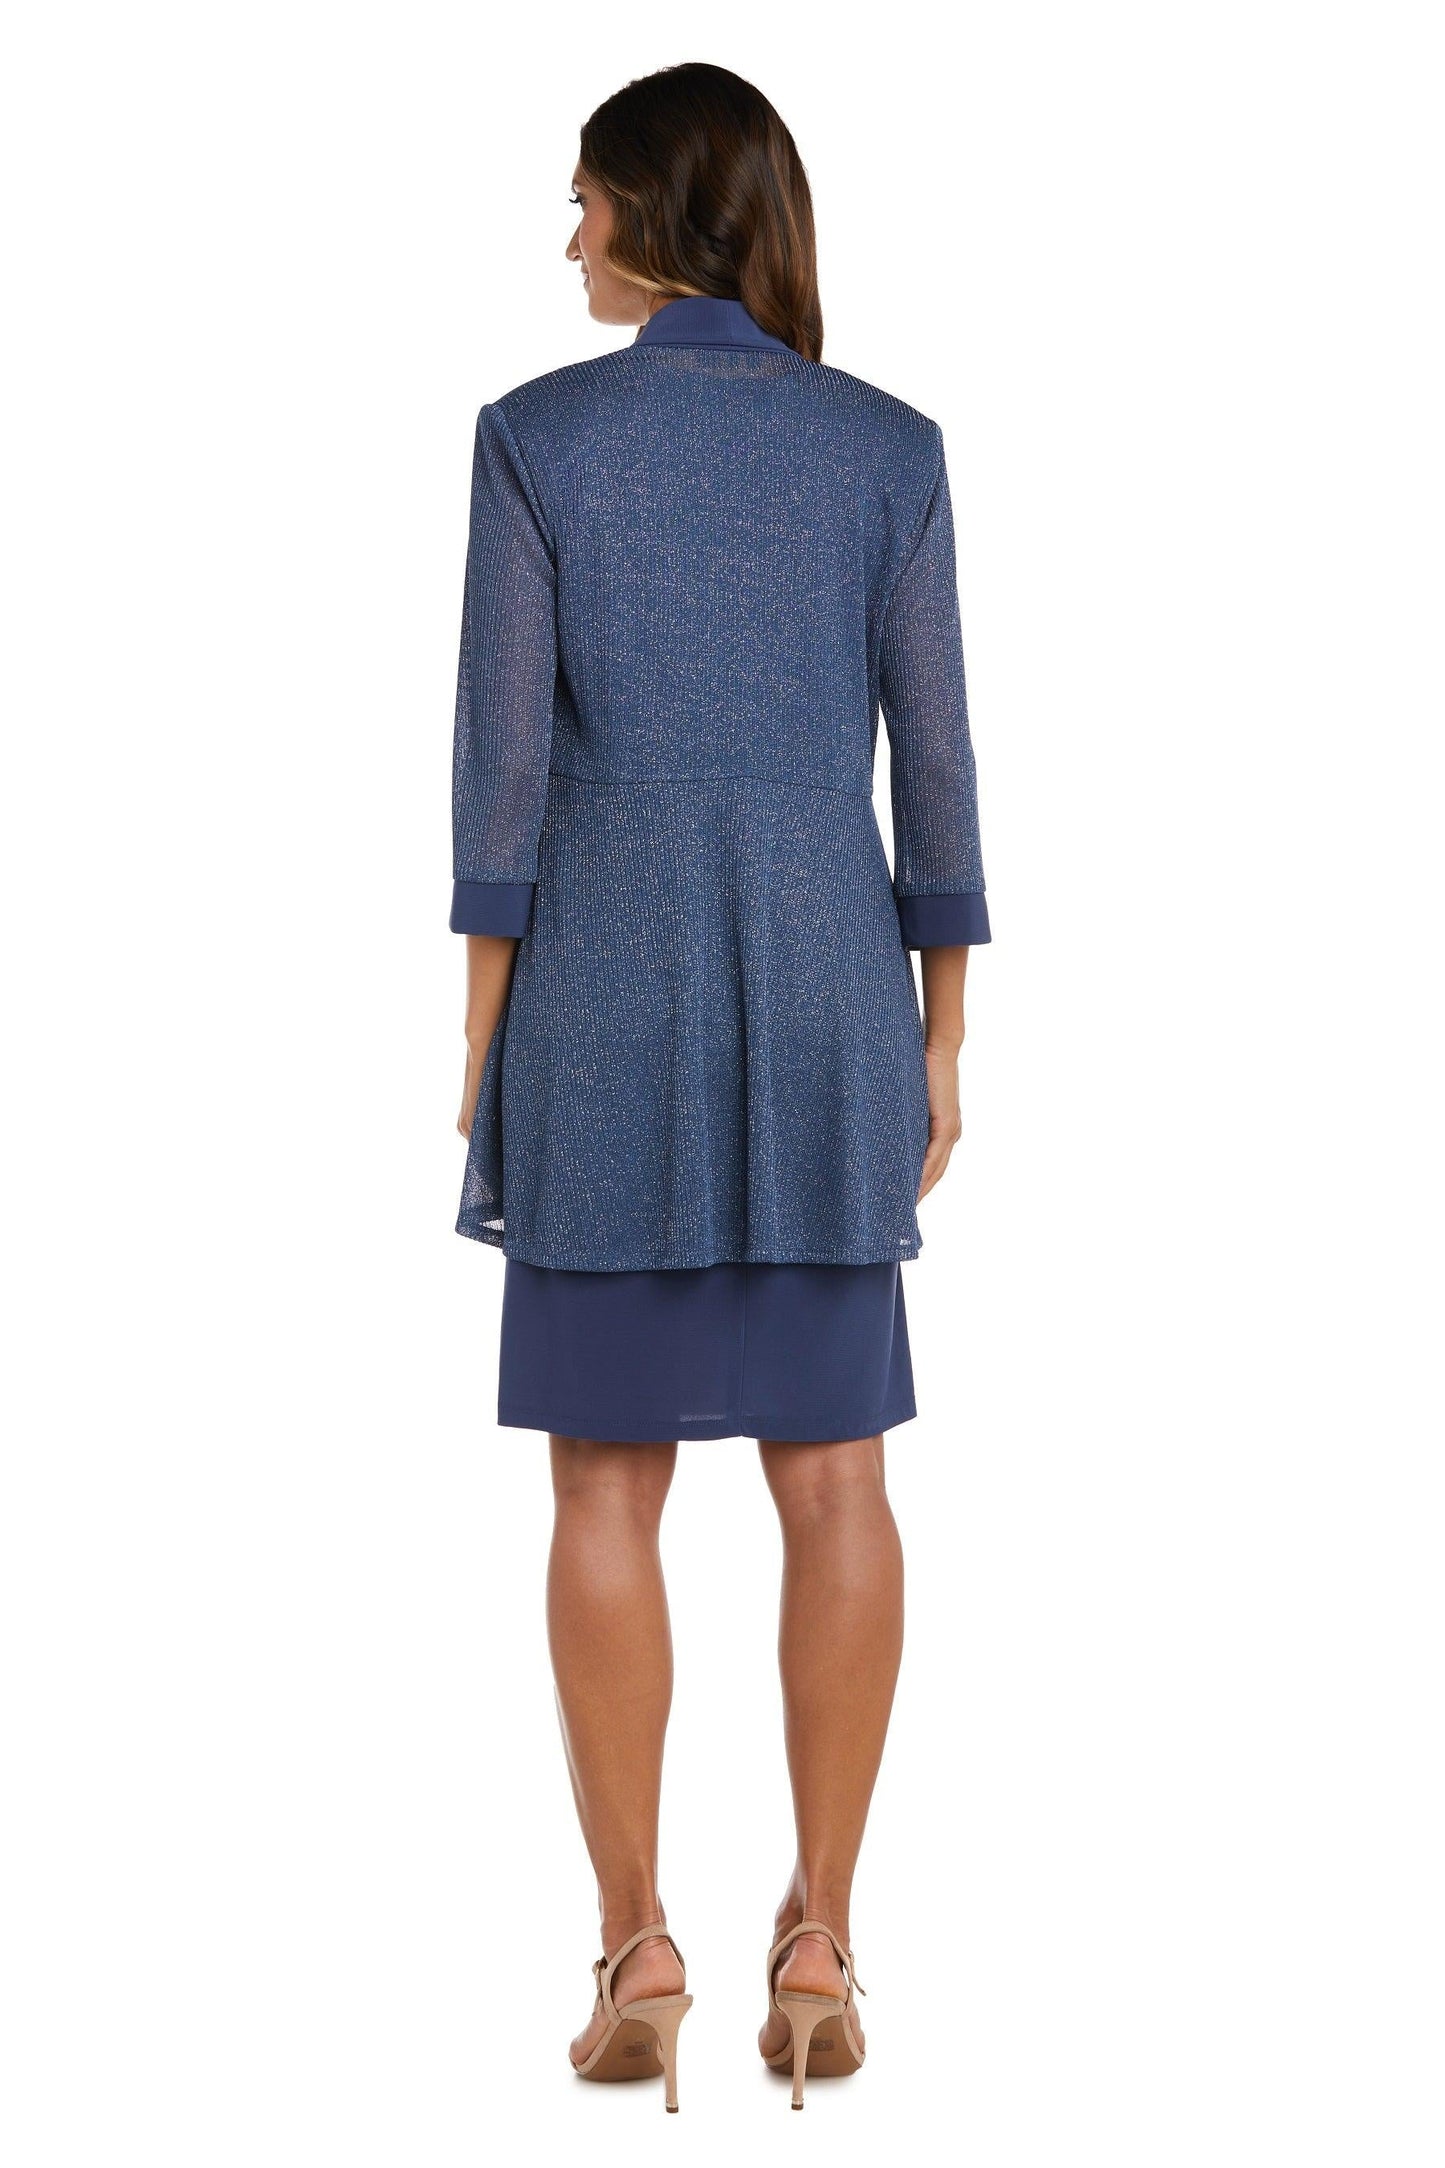 R&M Richards Short Petite Jacket Set Dress 1873P - The Dress Outlet